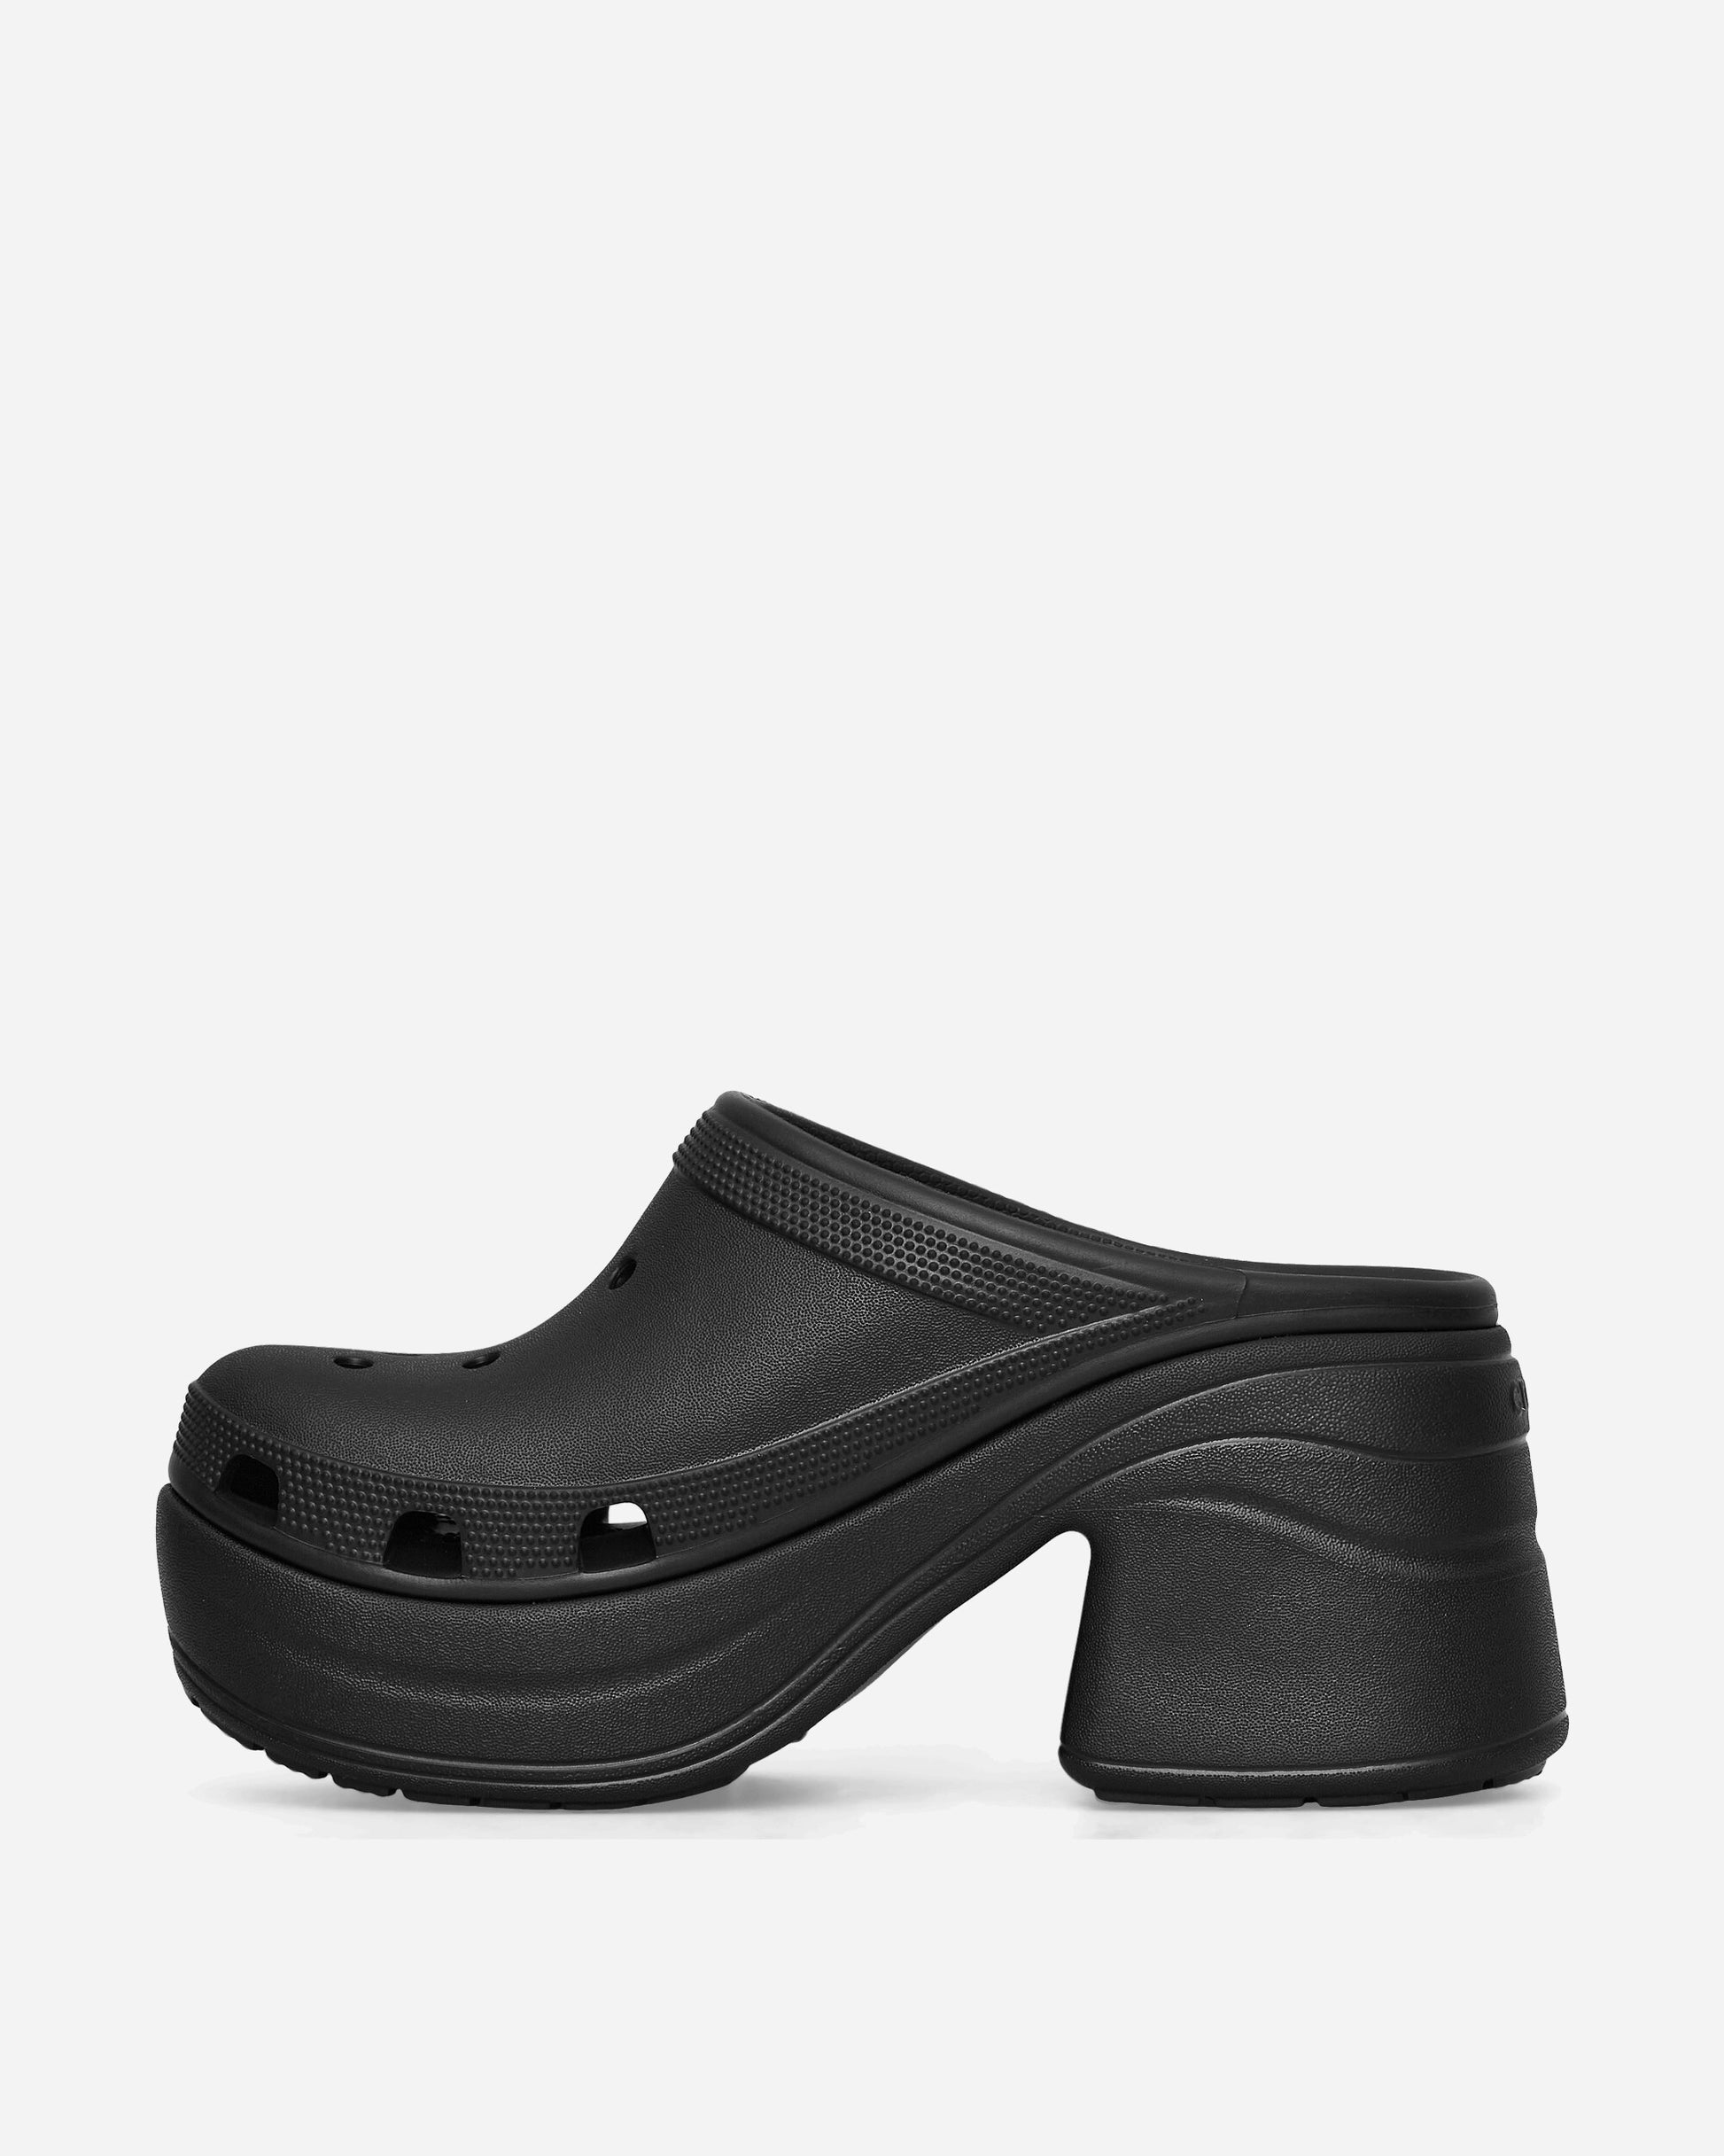 Crocs Wmns Siren Clog W Black Sandals and Slides Heels 208547 BLK